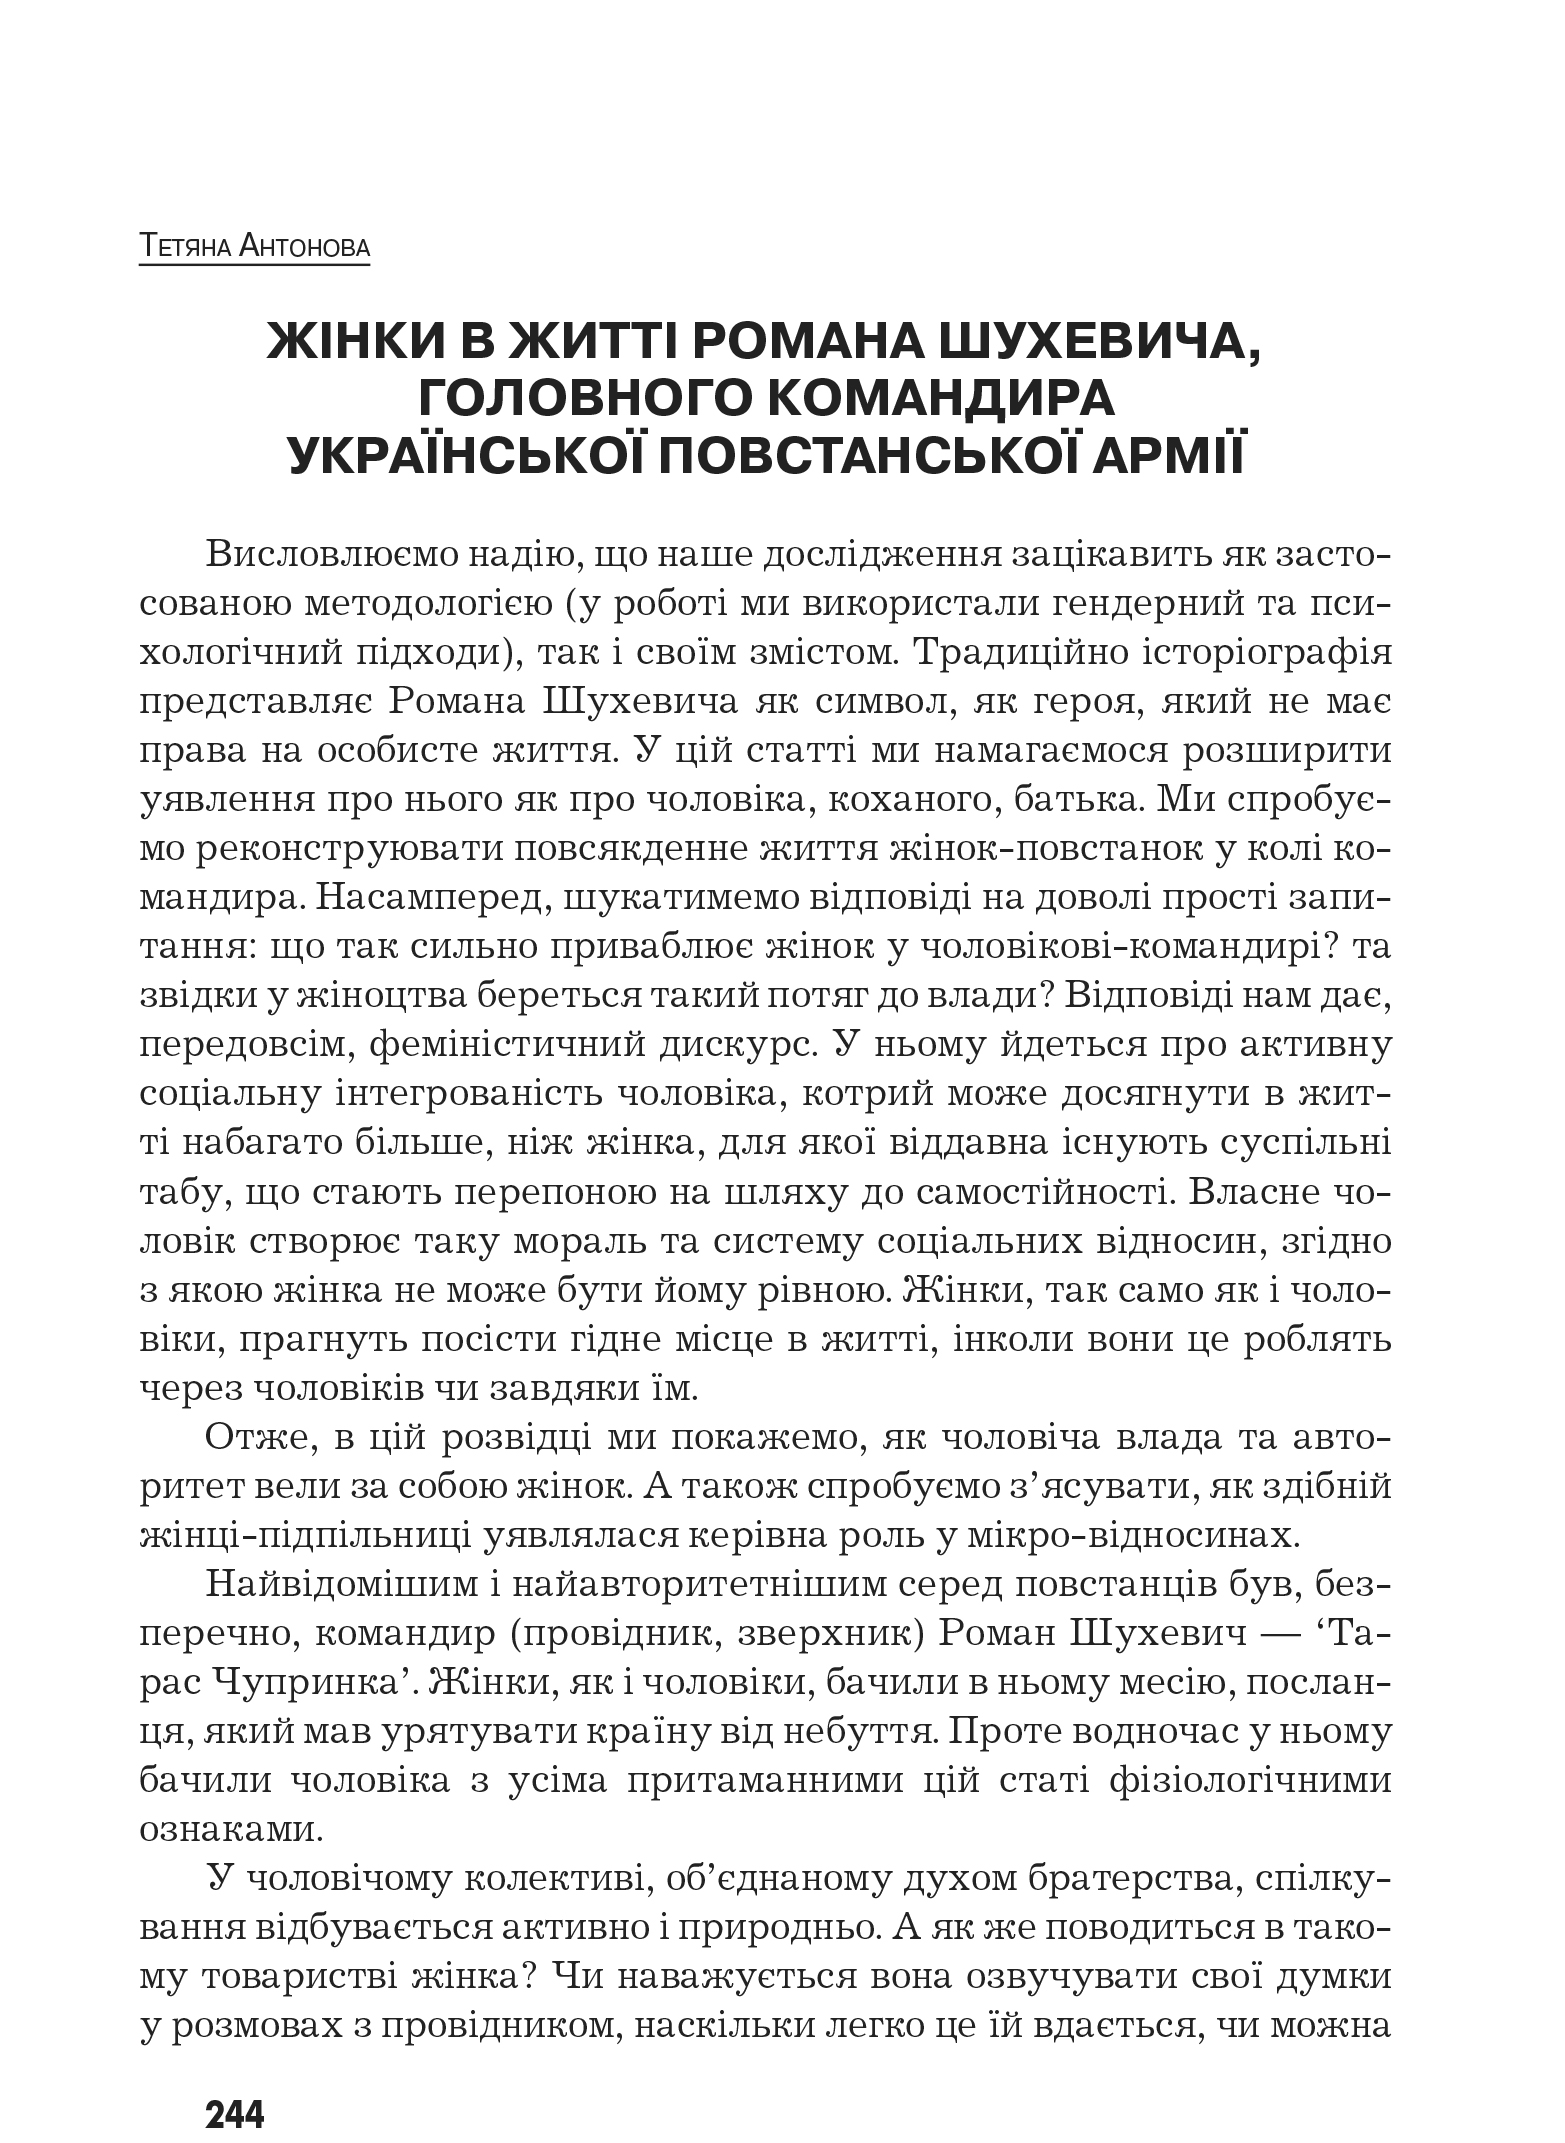 Український визвольний рух №10, ст. 244 - 256